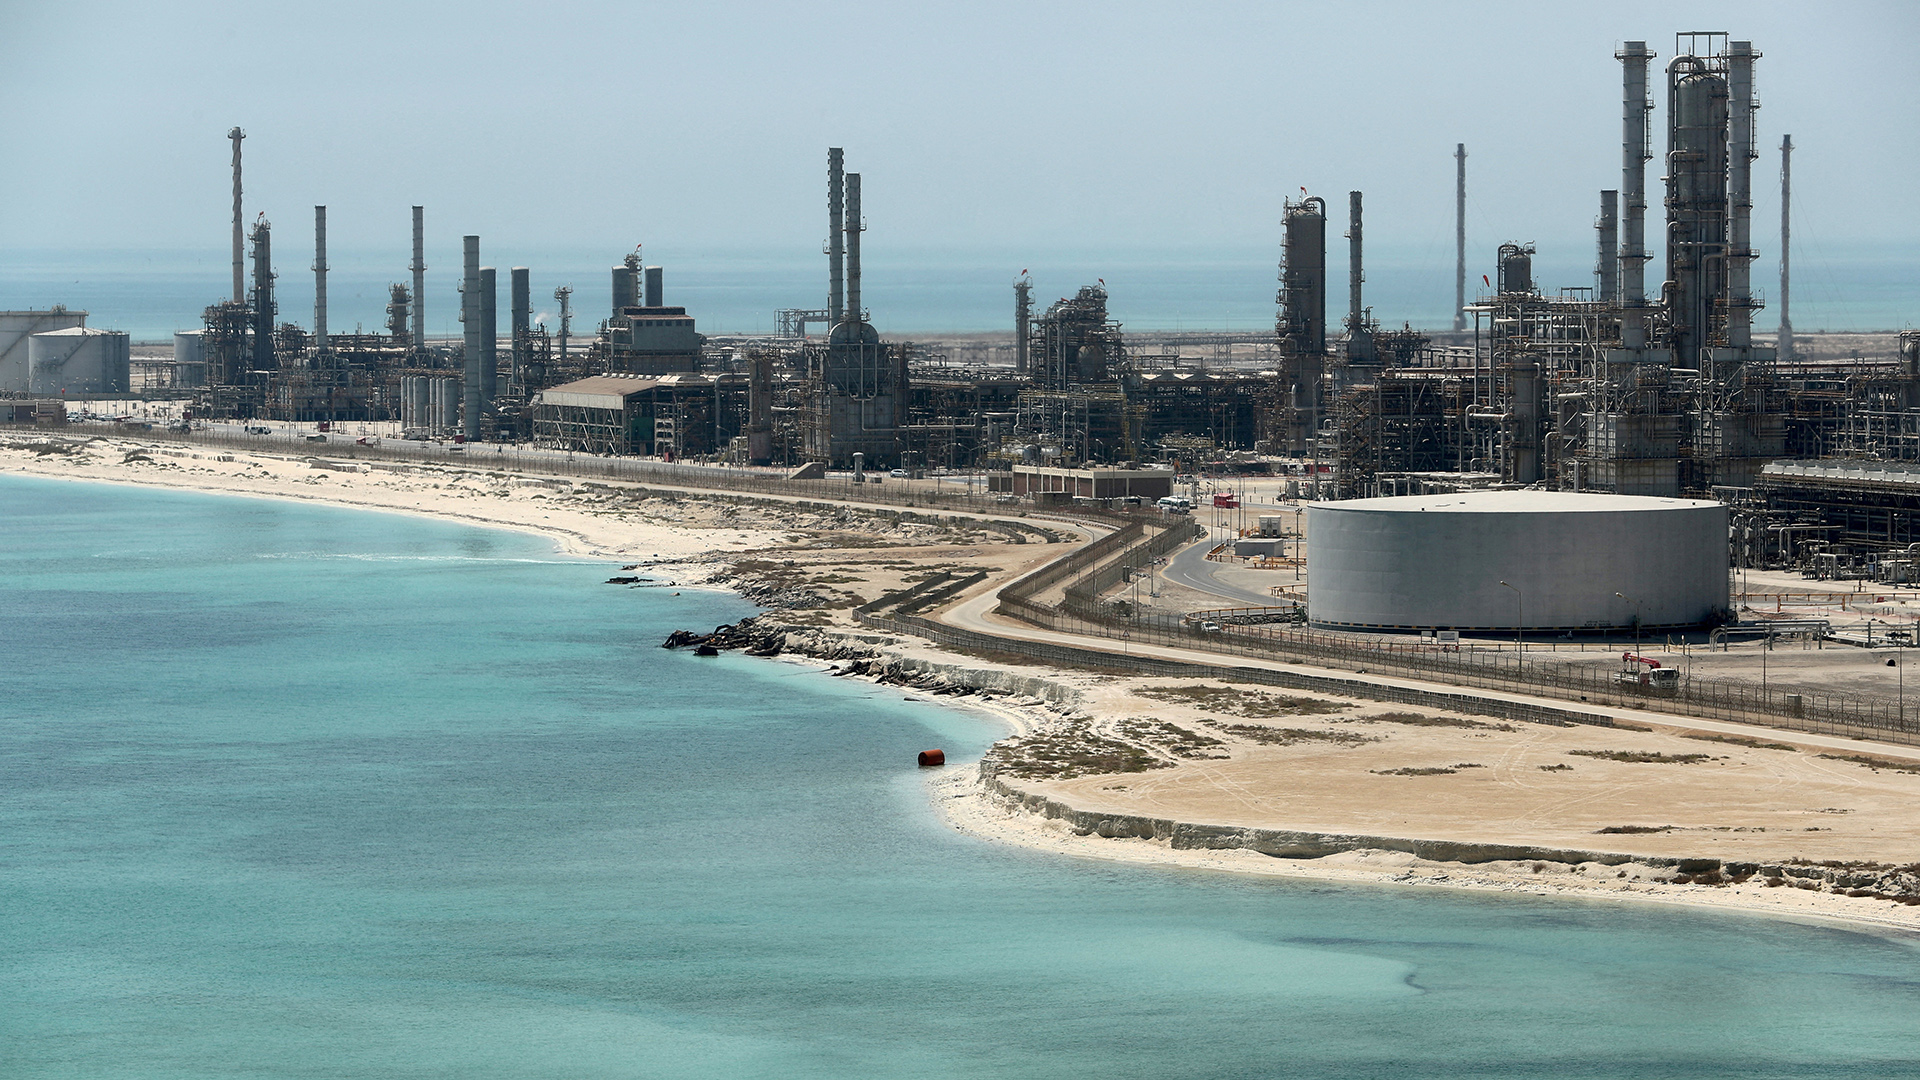 Gesamtansicht der Ölraffinerie und des Ölterminals von Saudi Aramco in Ras Tanura, Saudi-Arabien (Archivbild aus Mai 2018) | REUTERS